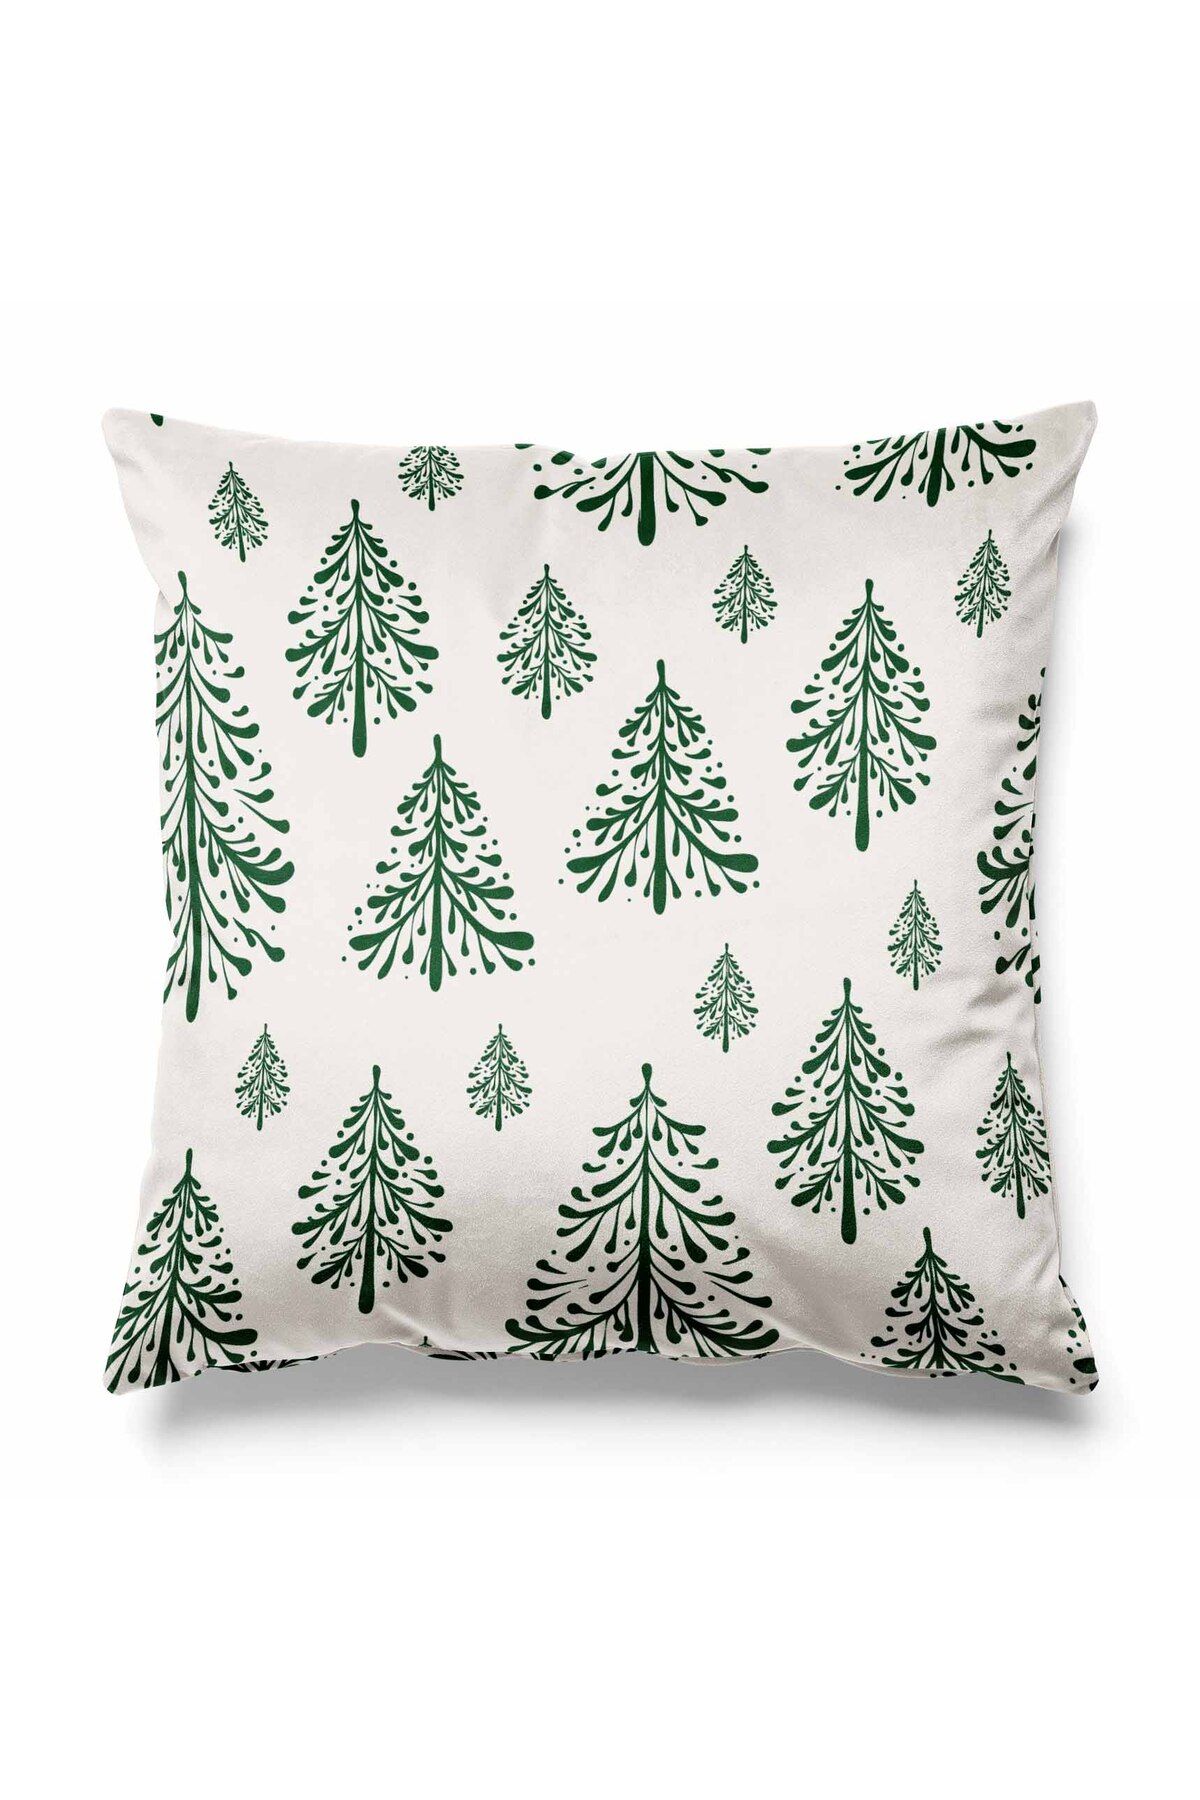 Pilloveland Ekru Zeminde Yeşil Çam Ağaçları Desenli Çift Tarafı Baskılı Kırlent Kılıfı Yılbaşı Christmas Noel